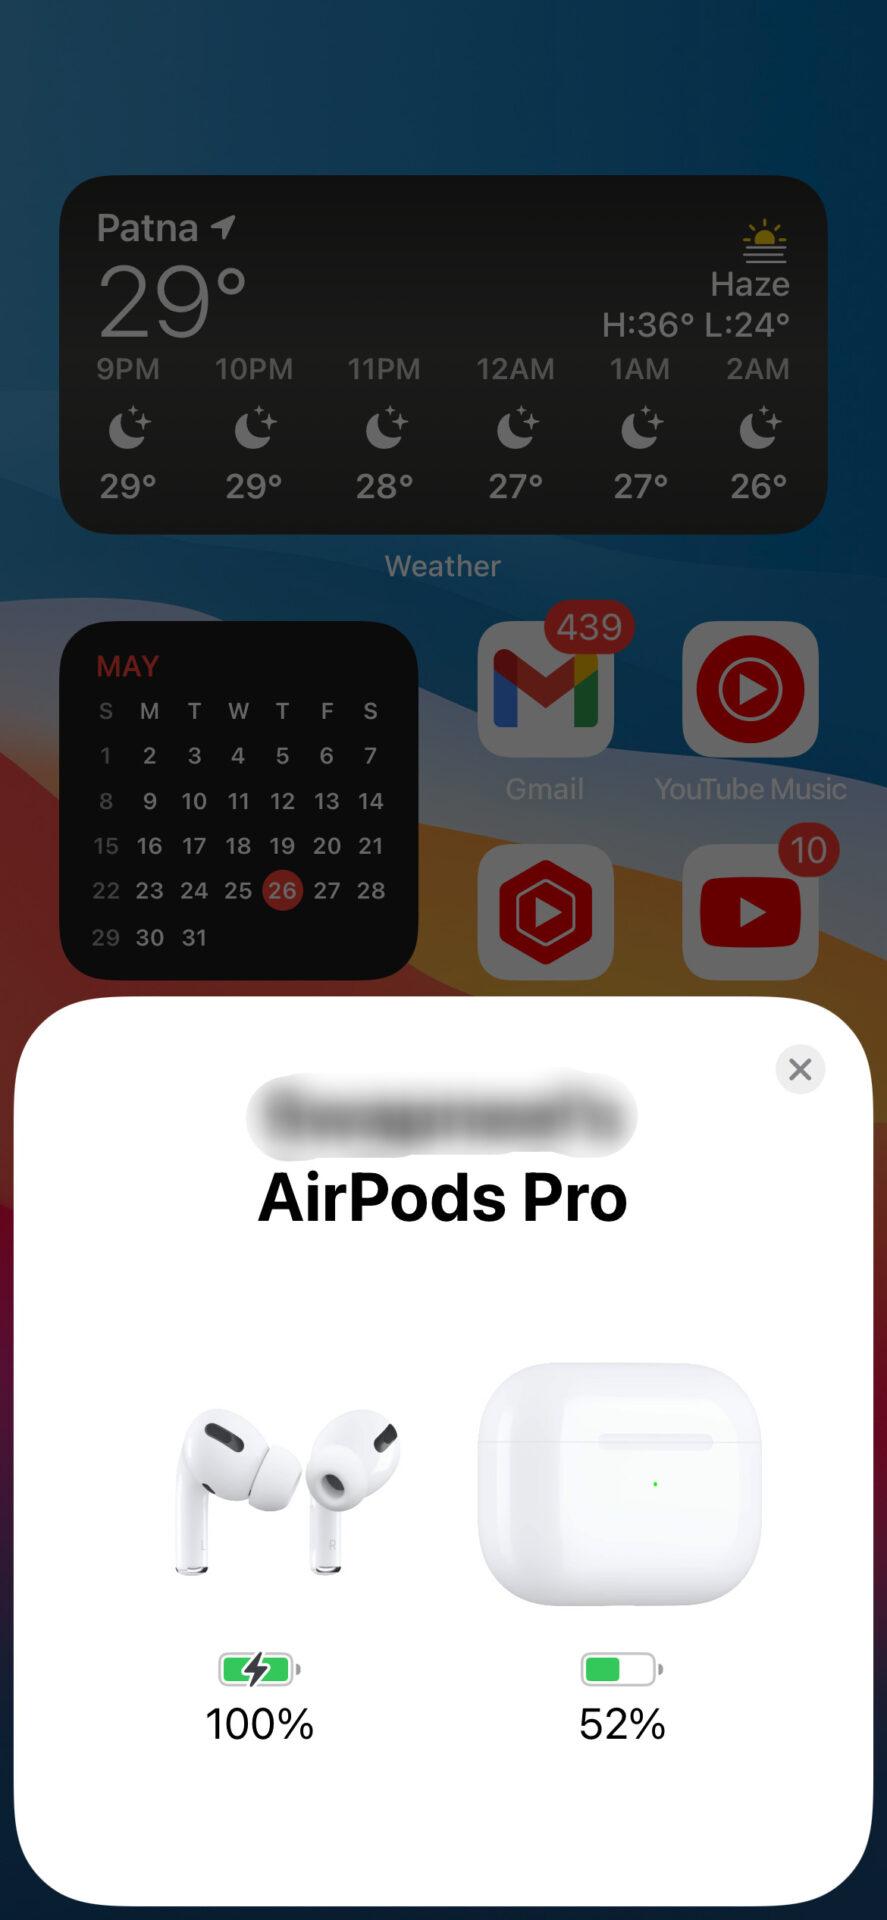 AirPods connect pronpt